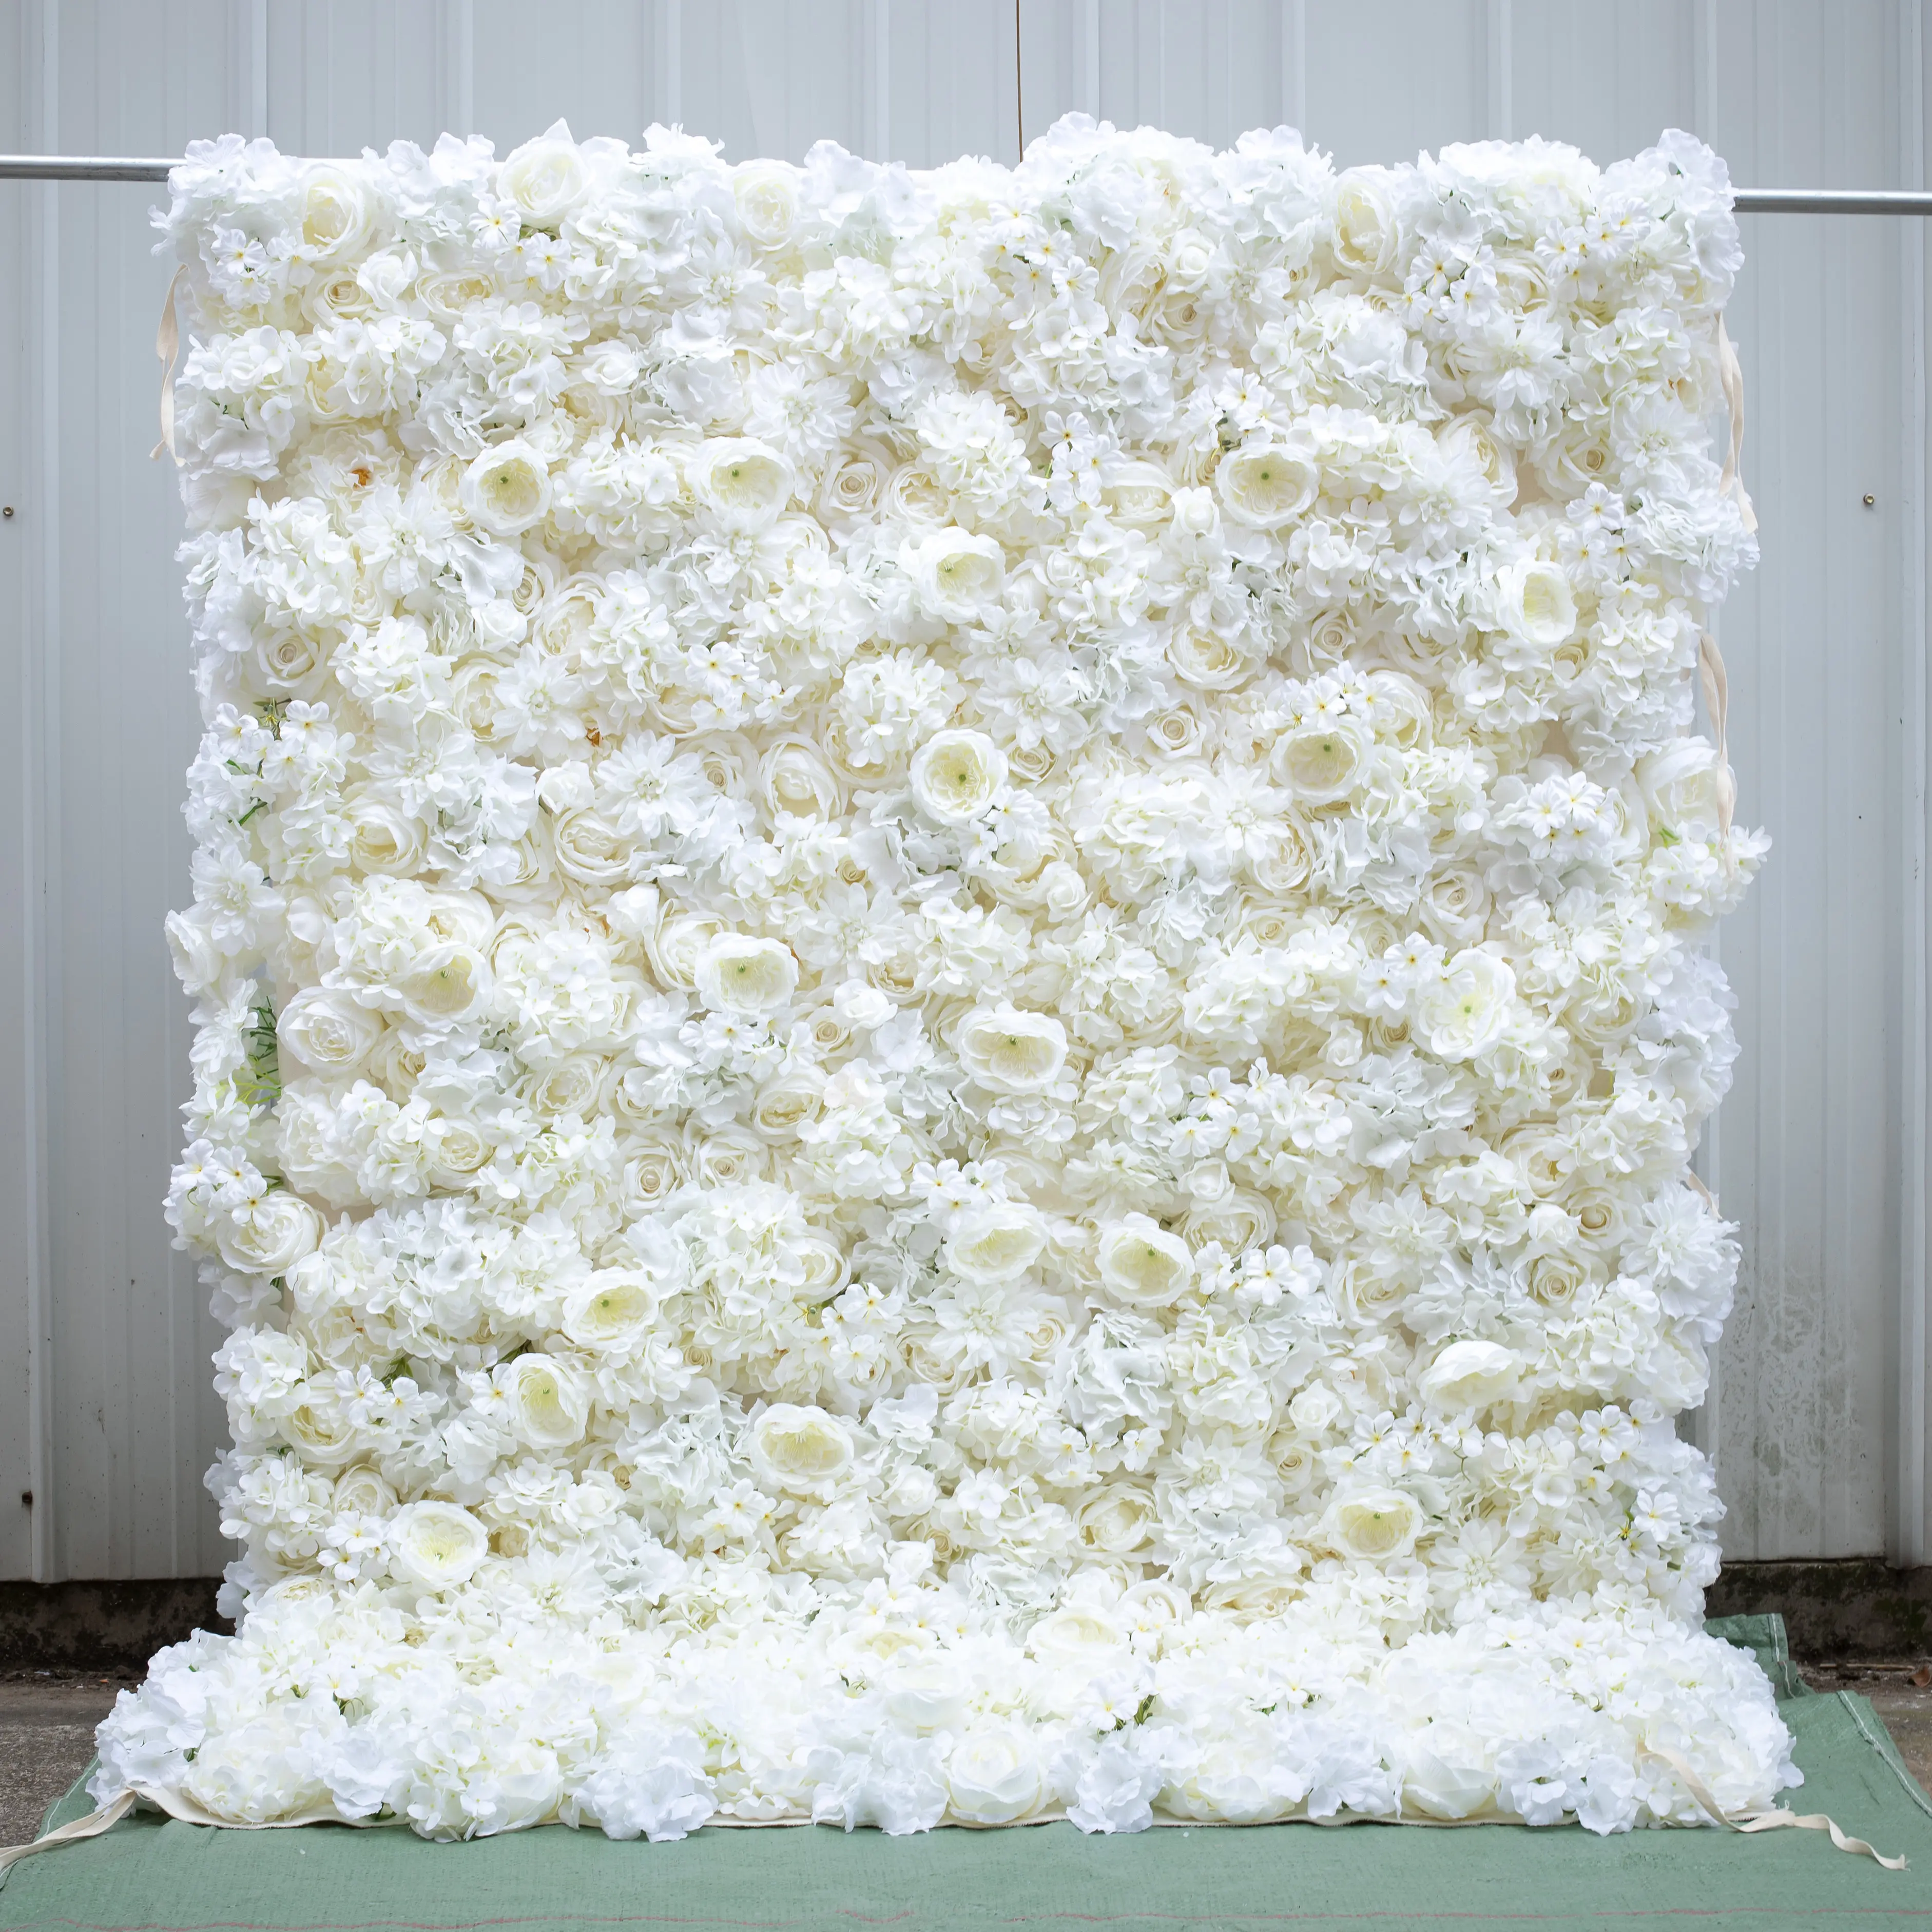 Flores artificiales blancas 3D de alta calidad de 8x8 pies, decoración de pared, cortina enrollable, telón de fondo para decoración de eventos de boda